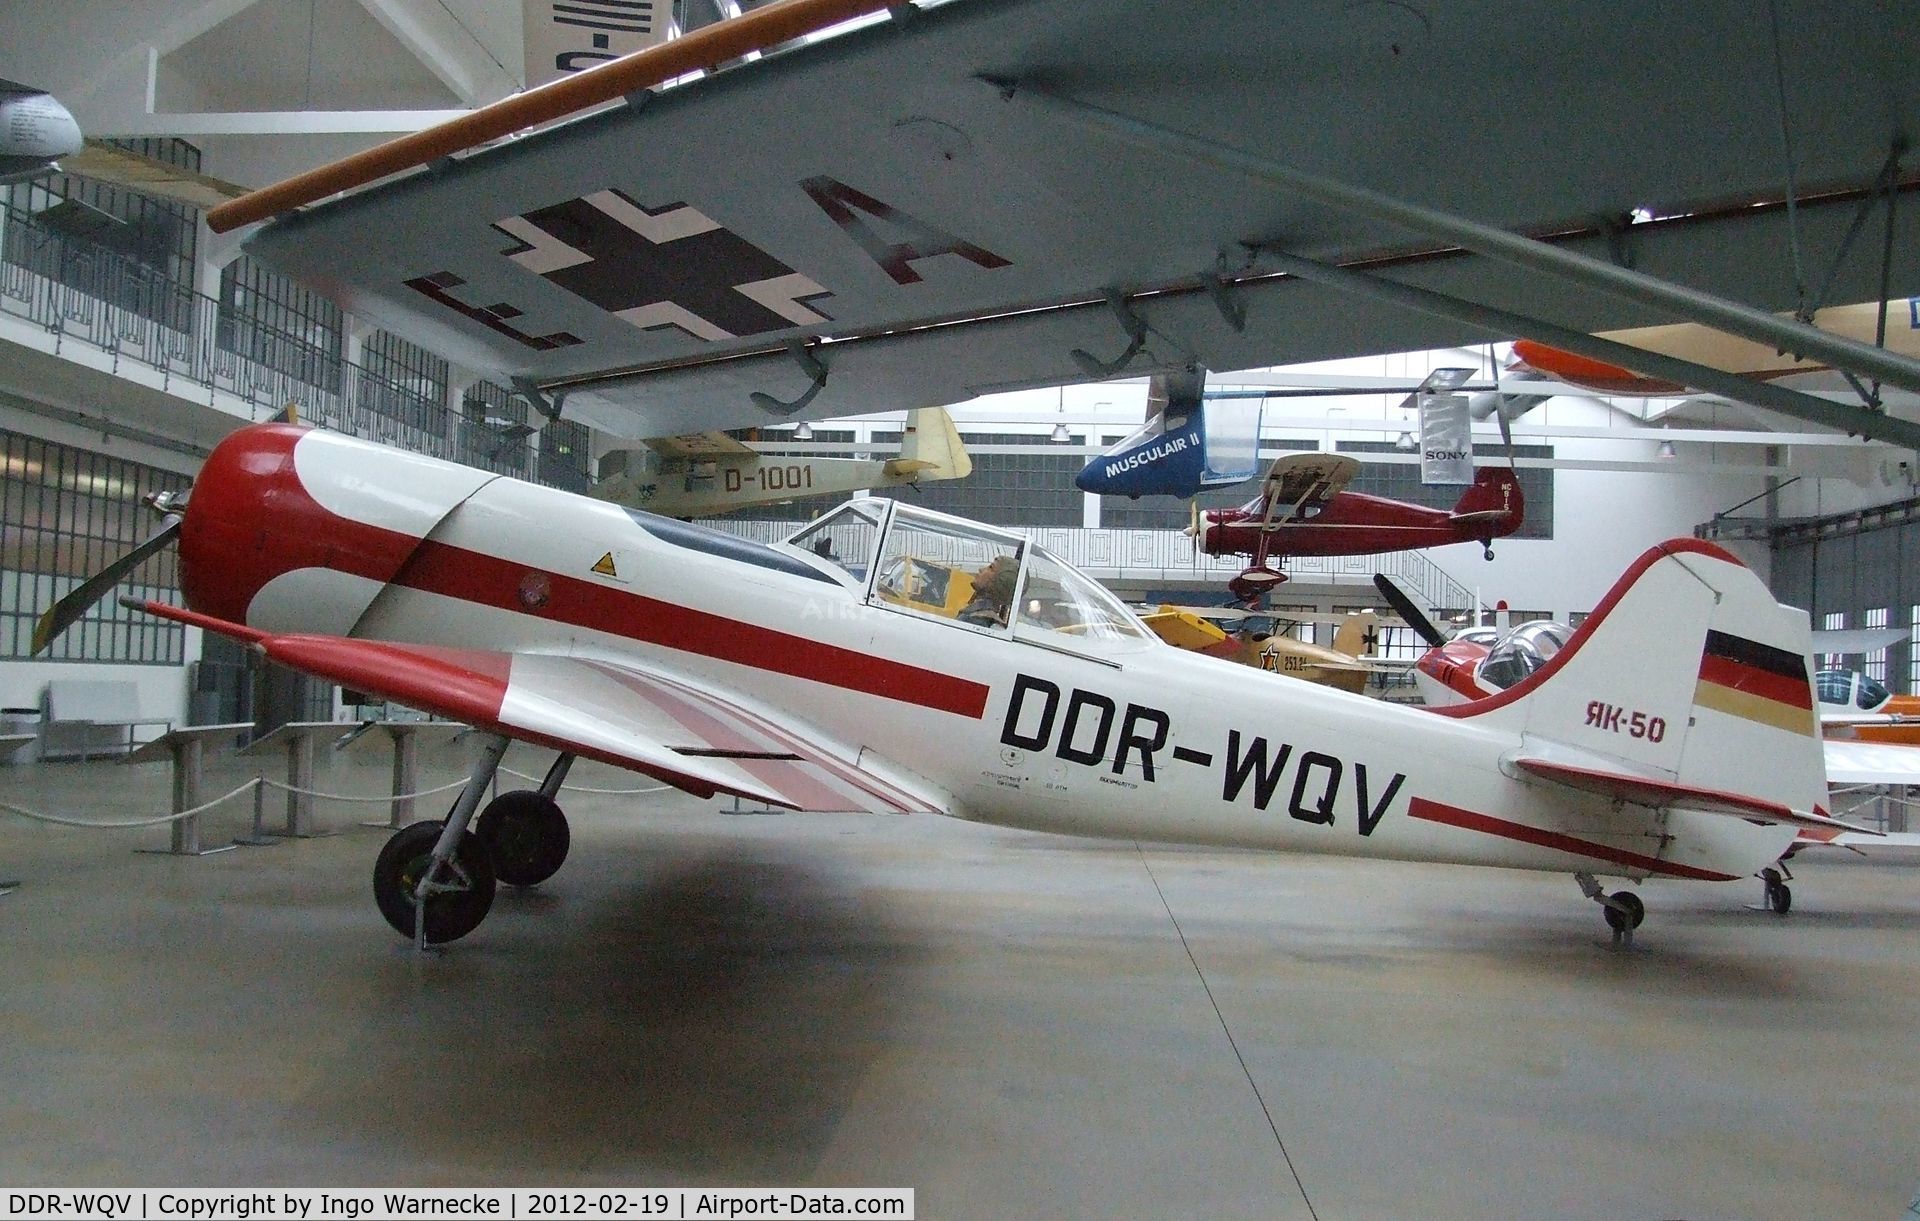 DDR-WQV, Yakovlav Yak-50 C/N 781206, Yakovlev Yak-50 at the Deutsches Museum Flugwerft Schleißheim, Oberschleißheim